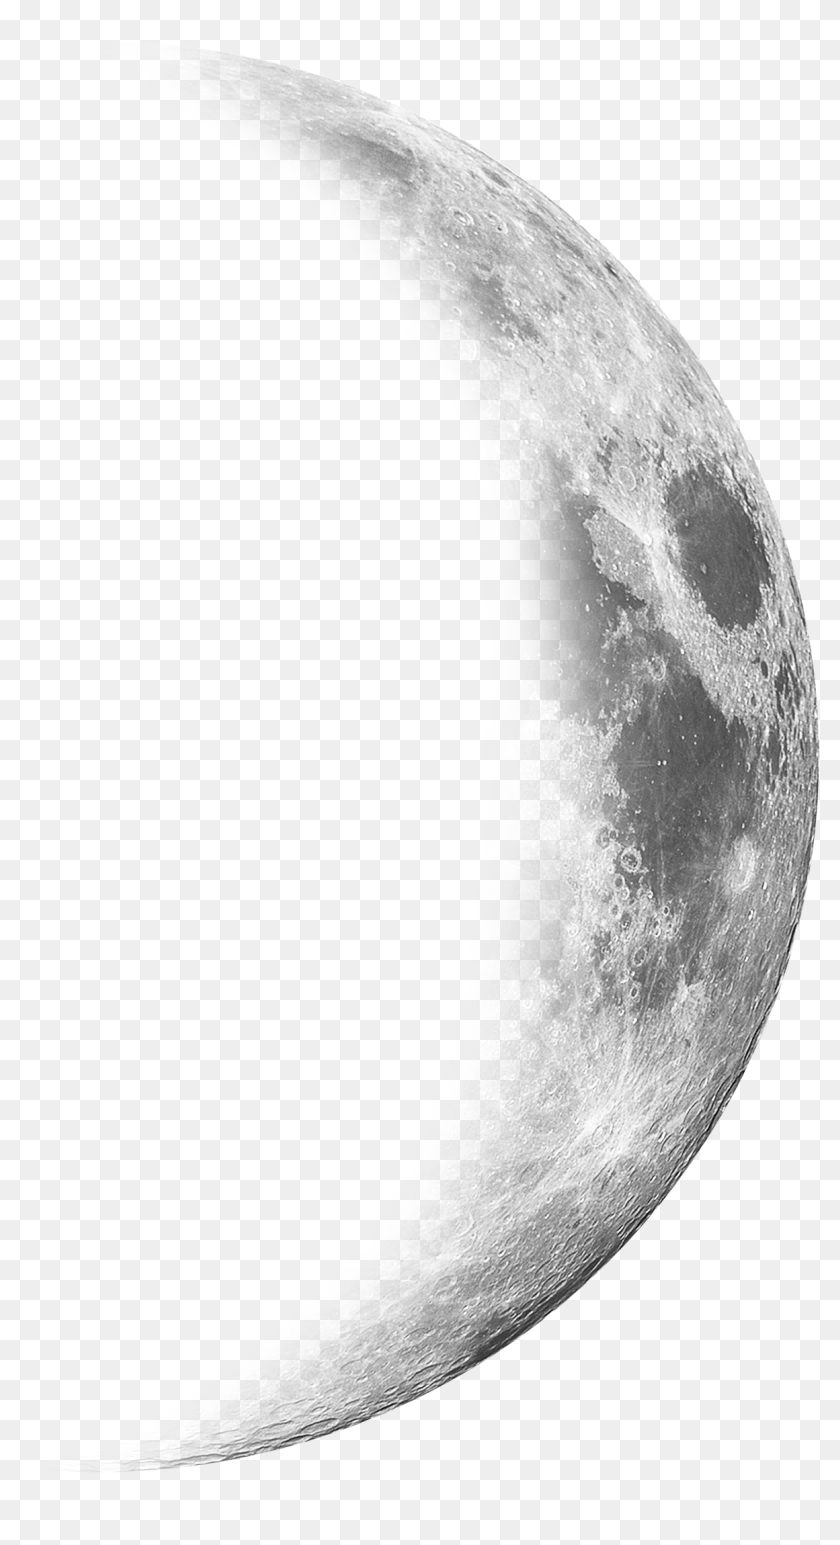 Mặt trăng lưỡi liềm trong suốt - Với hình ảnh Mặt trăng lưỡi liềm trong suốt, bạn còn có thể khám phá thêm những chi tiết tinh xảo và đầy bất ngờ trên không trung đầy mê hoặc. Hãy đến với chúng tôi và thưởng thức những hình ảnh tuyệt vời này.